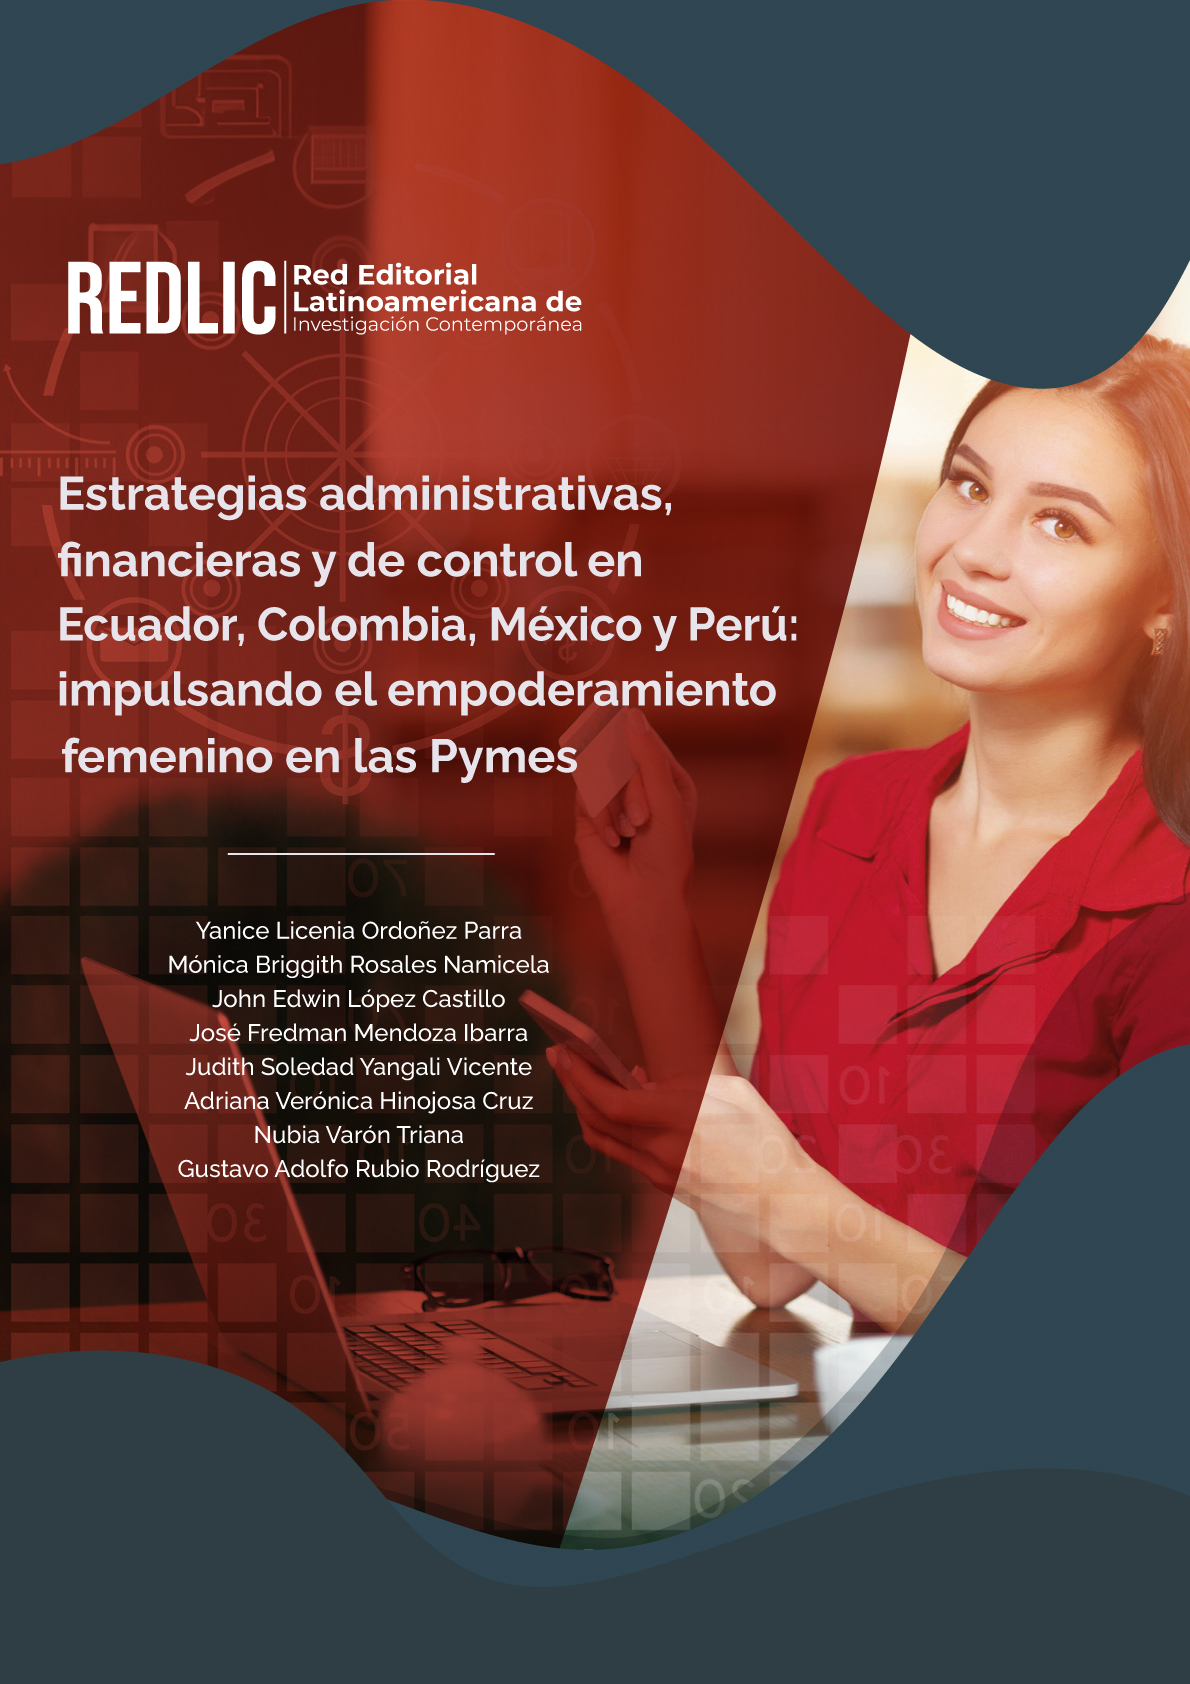 Estrategias administrativas, financieras y de control en Ecuador, Colombia, México y Perú: impulsando el empoderamiento femenino en las Pymes